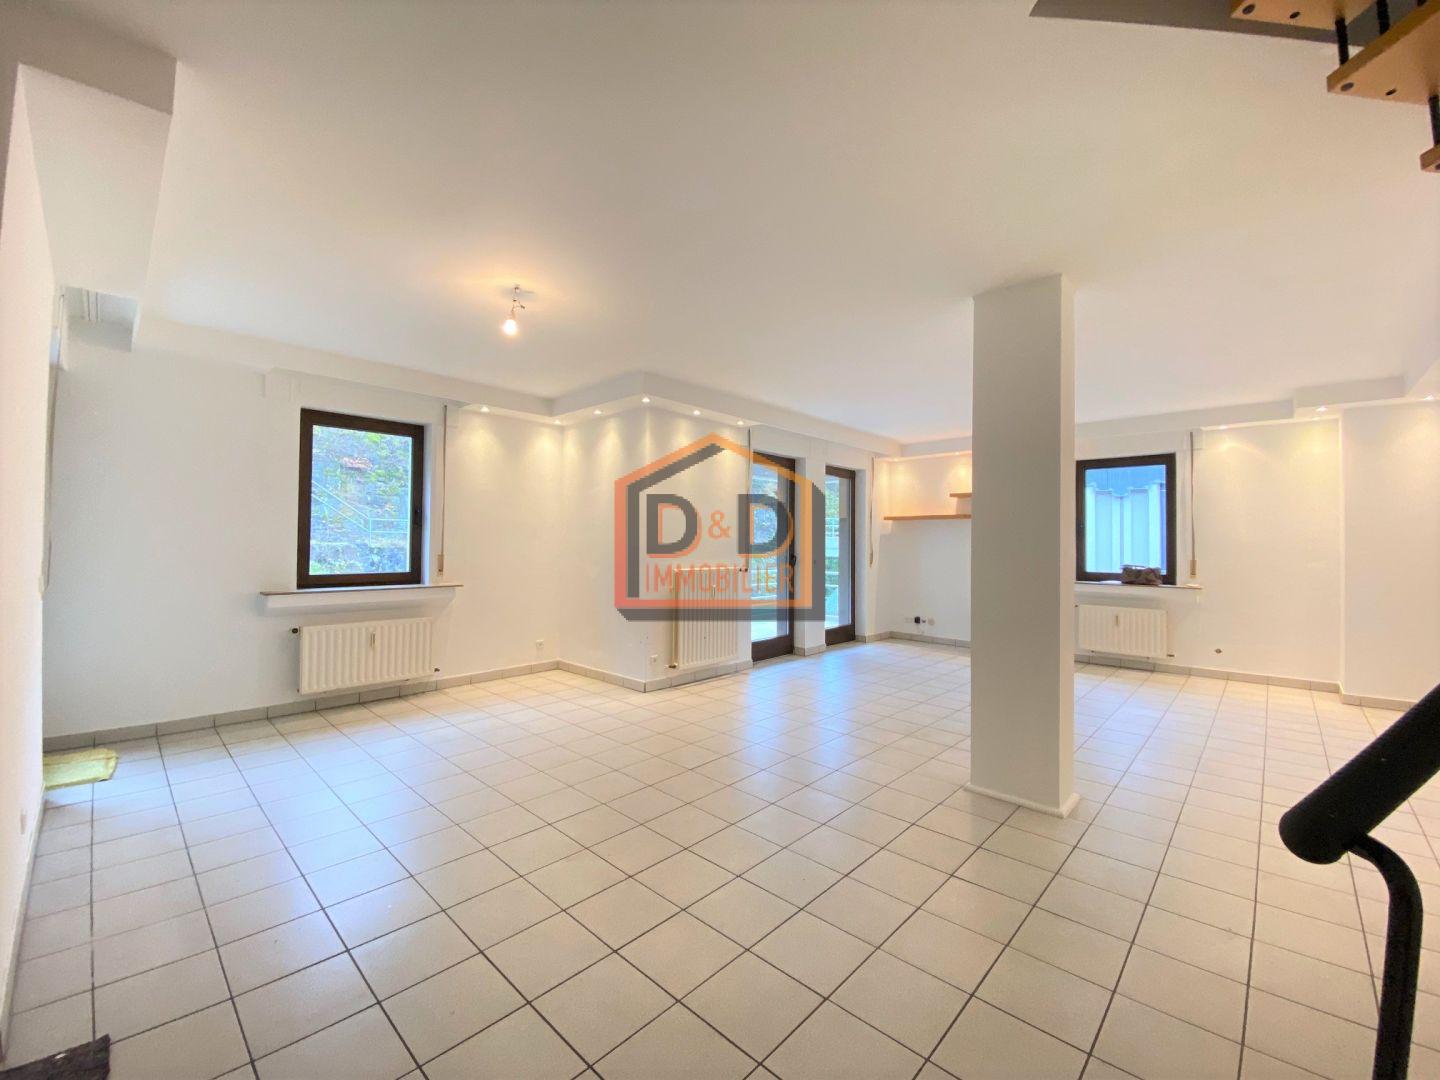 Appartement à Howald, 120 m², 2 chambres, 2 salles de bain, 1 garage, 2 000 €/mois